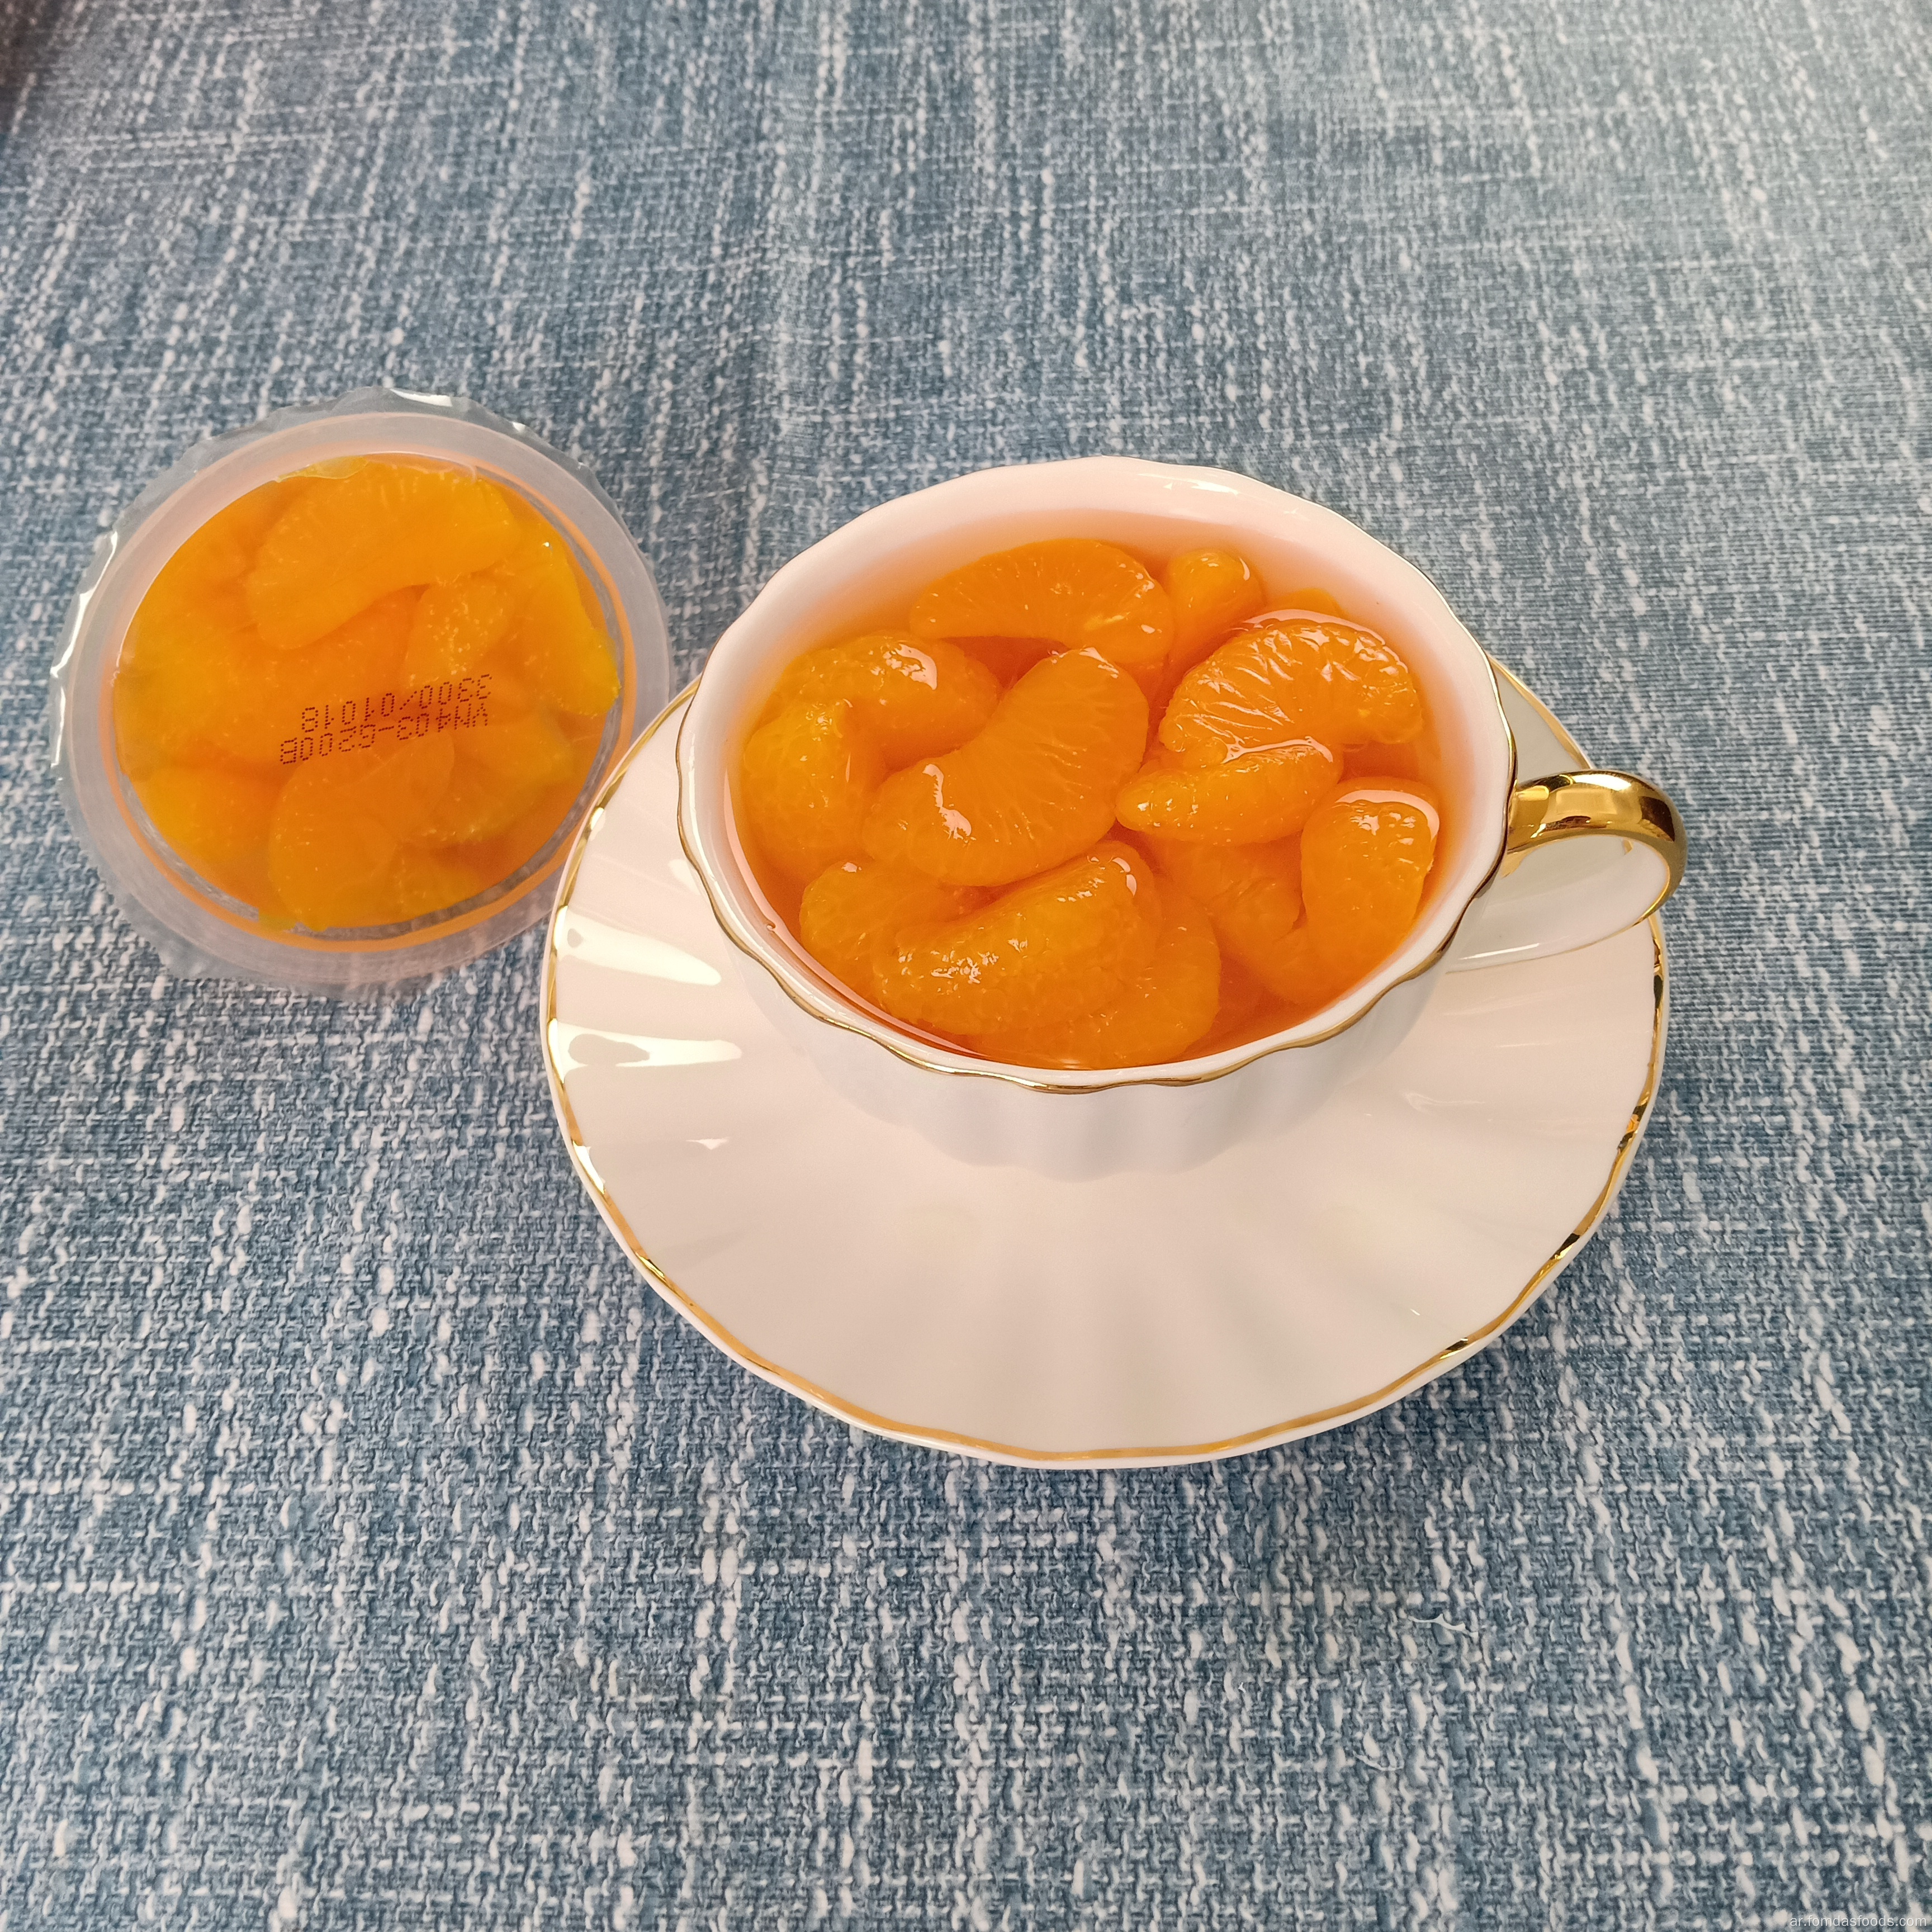 سعر المصنع 4 أوقية الماندرين برتقالي في عصير الفاكهة